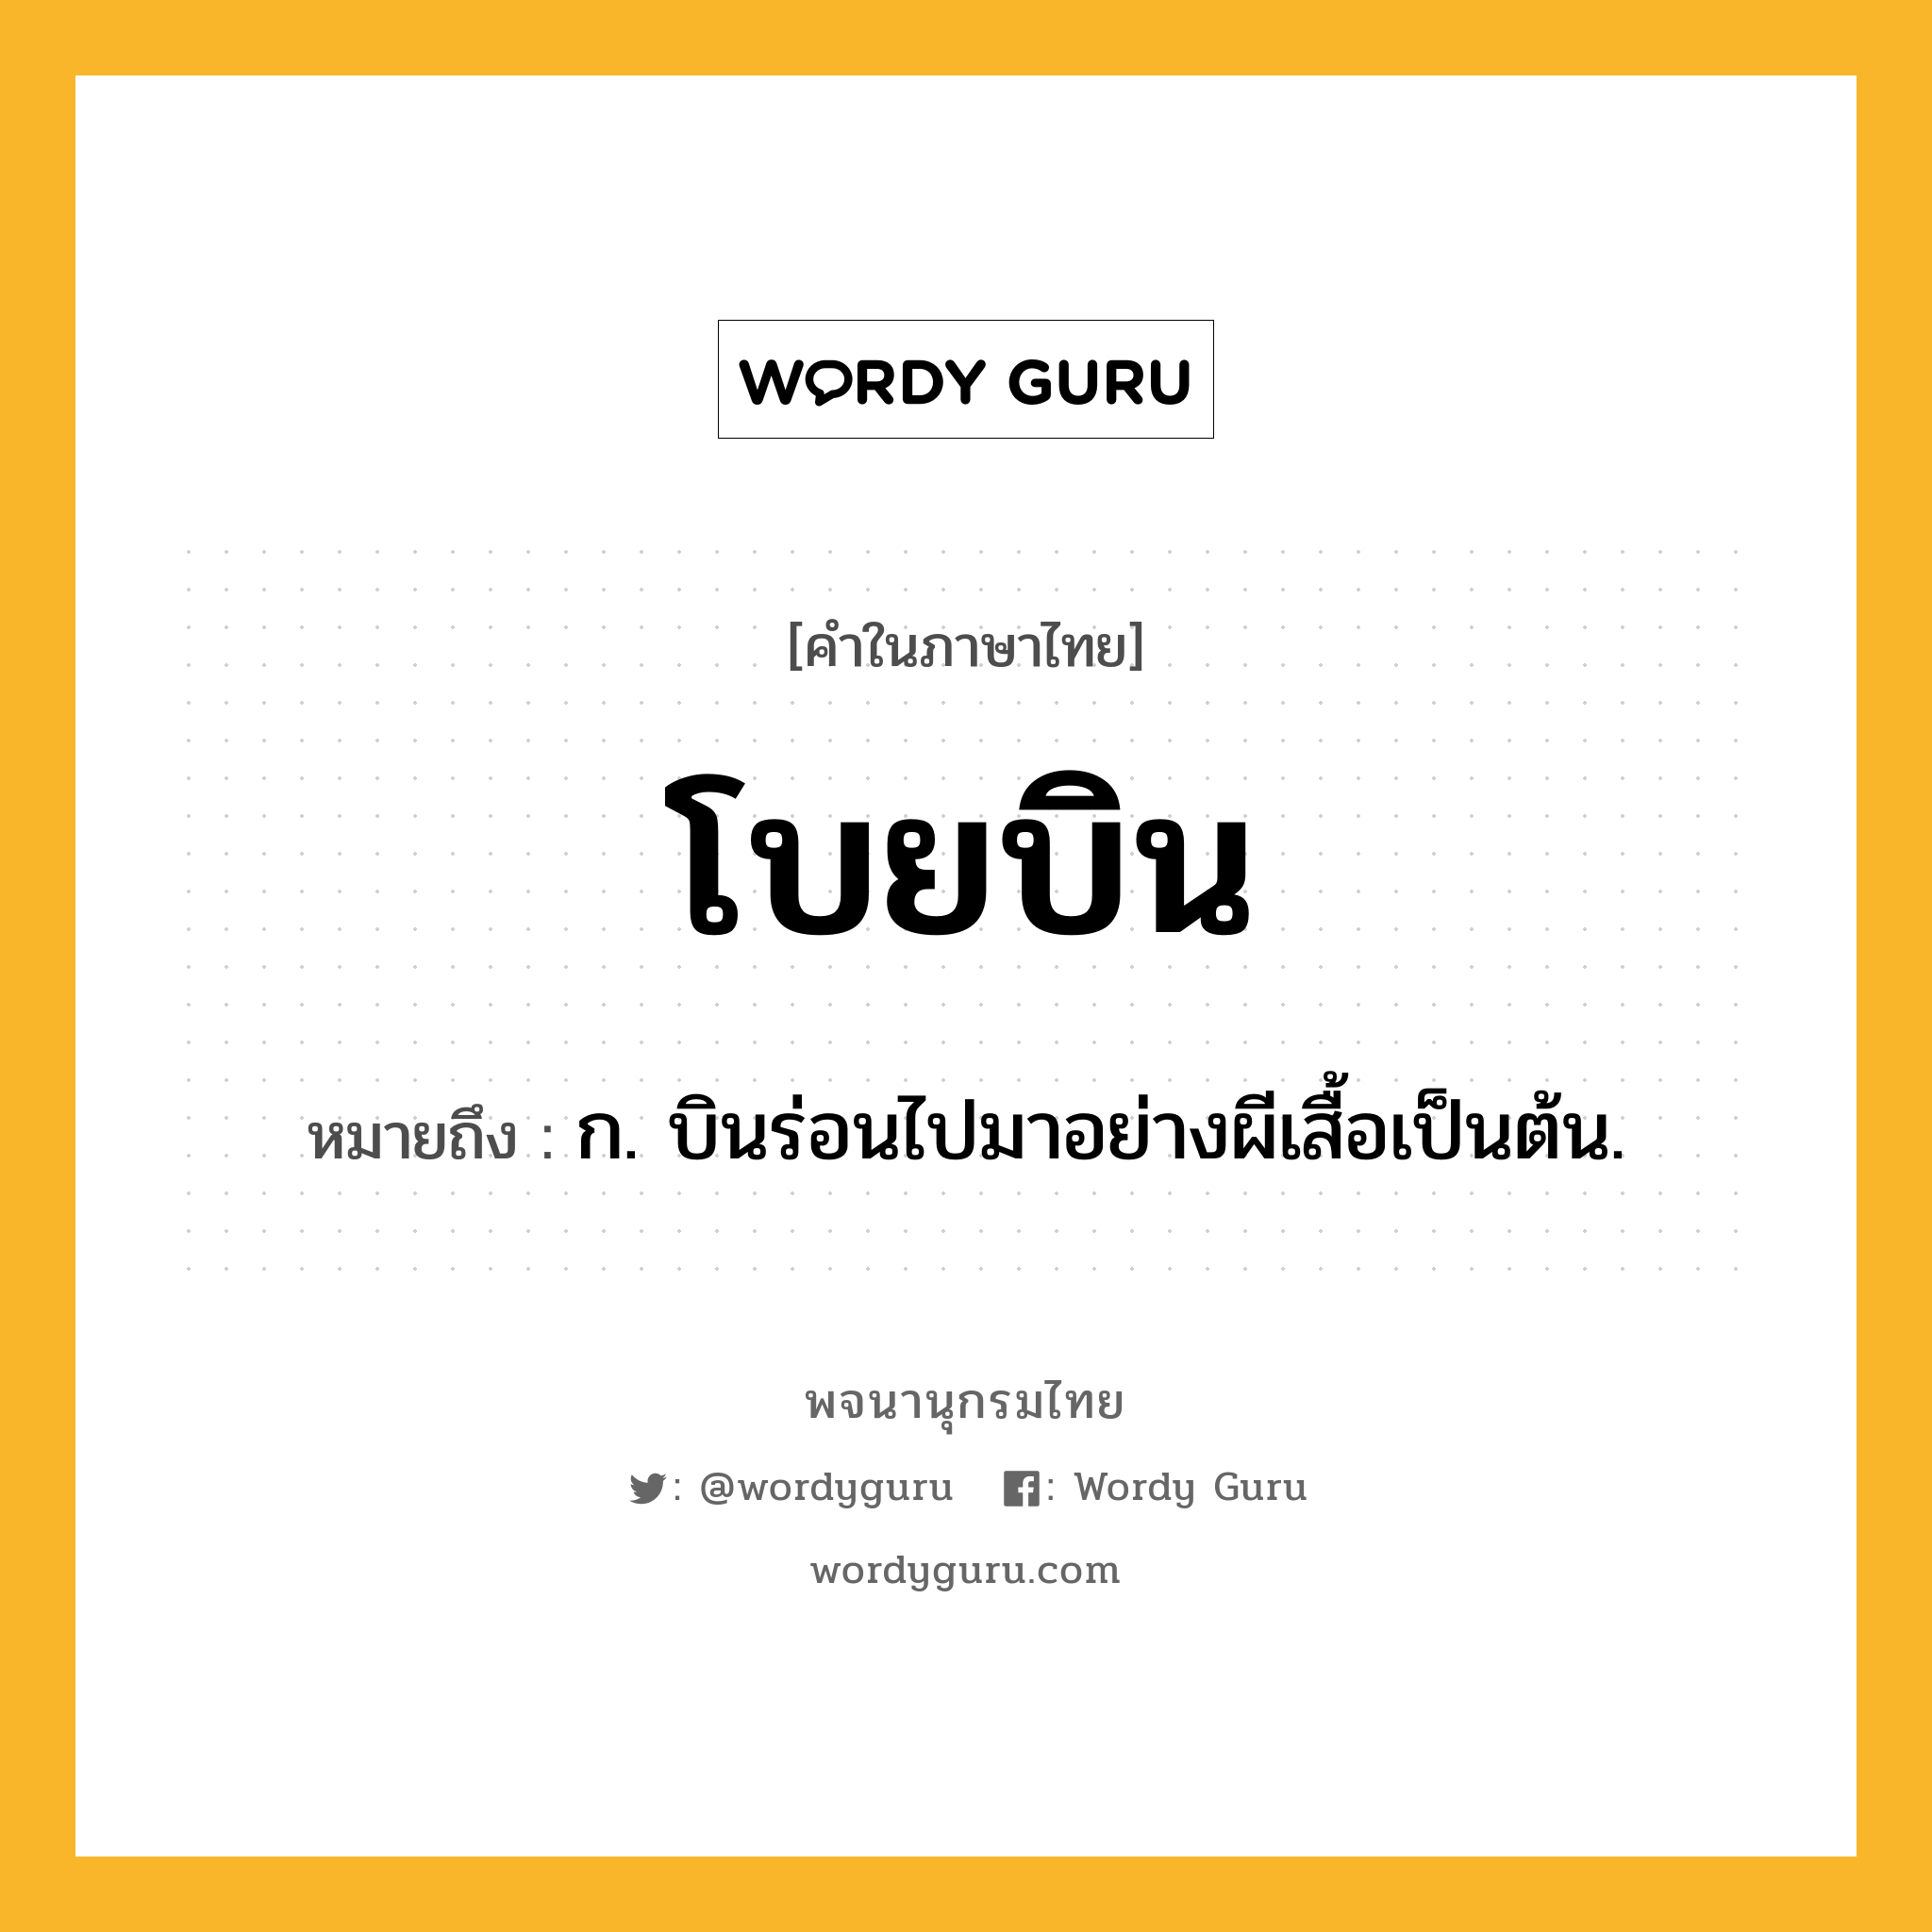 โบยบิน หมายถึงอะไร?, คำในภาษาไทย โบยบิน หมายถึง ก. บินร่อนไปมาอย่างผีเสื้อเป็นต้น.